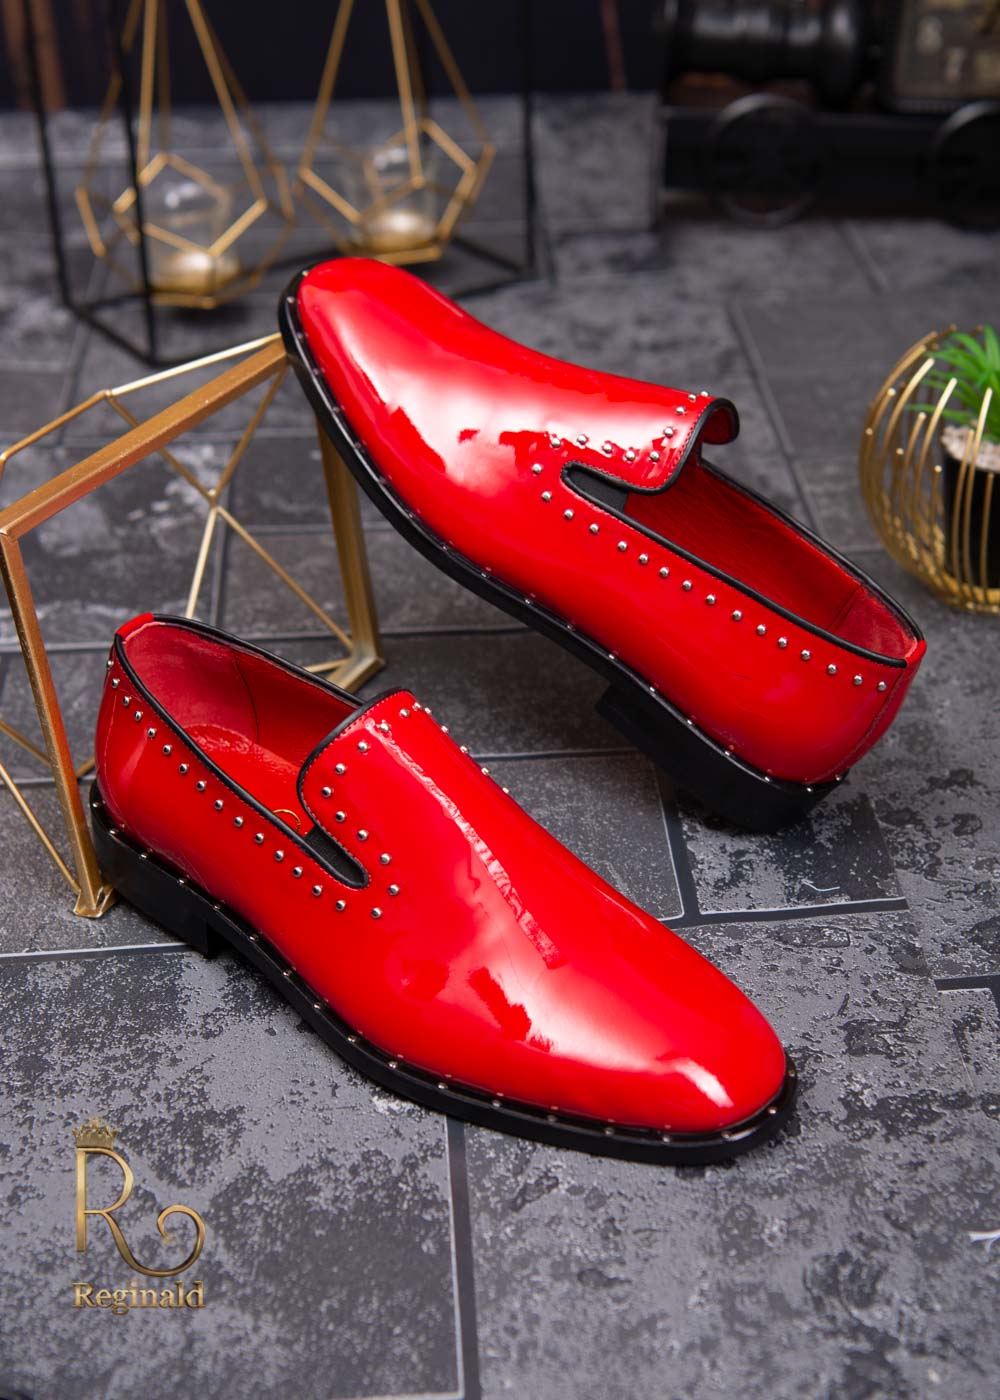 Pantofi Loafers de barbati rosii, piele naturala cu tinte argintii - P1483